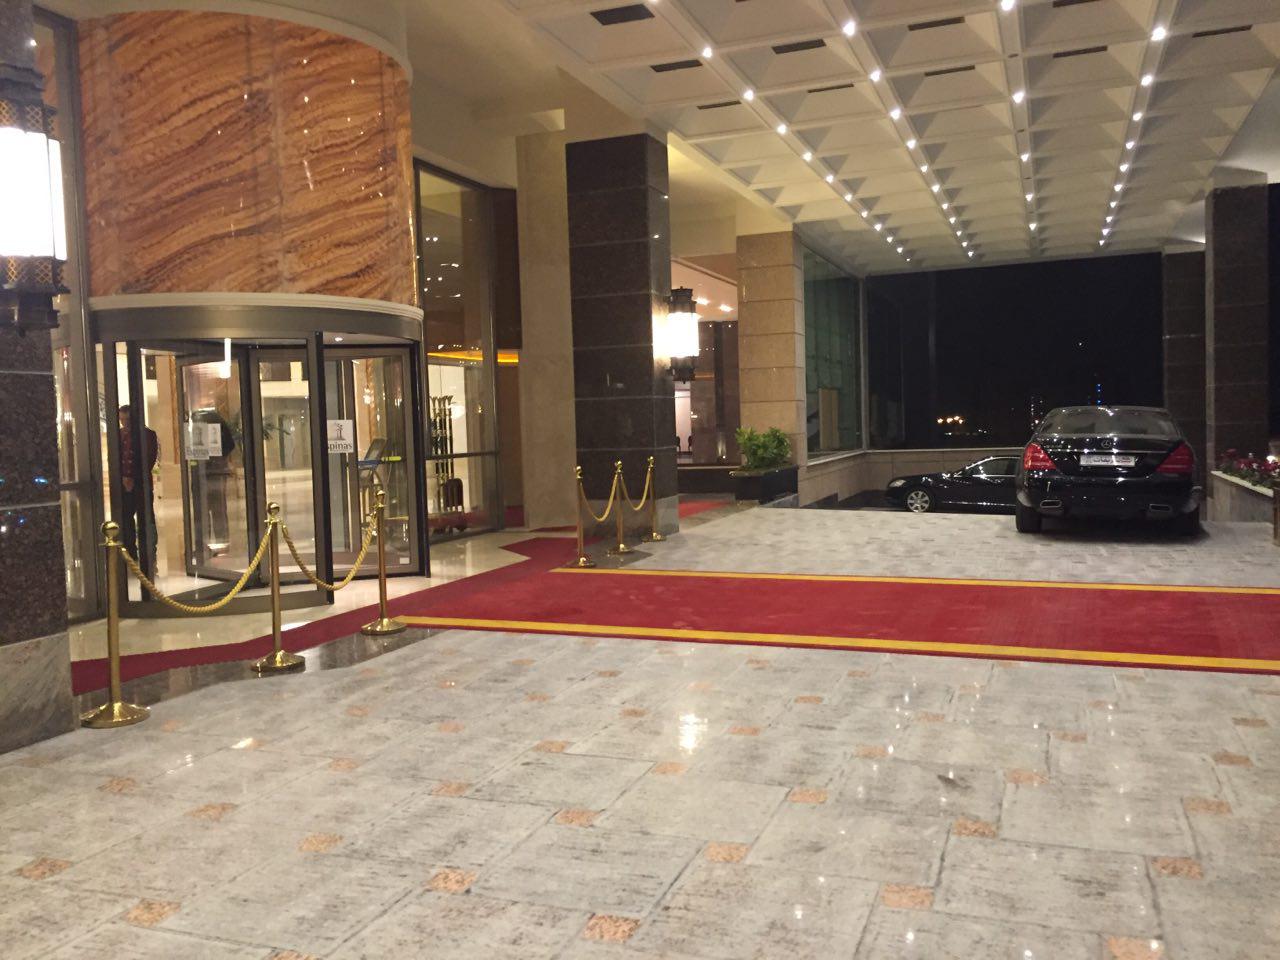 هتل اسپیناس پالاس افتتاح شد / گزارش تصویری از بزرگترین هتل ایران